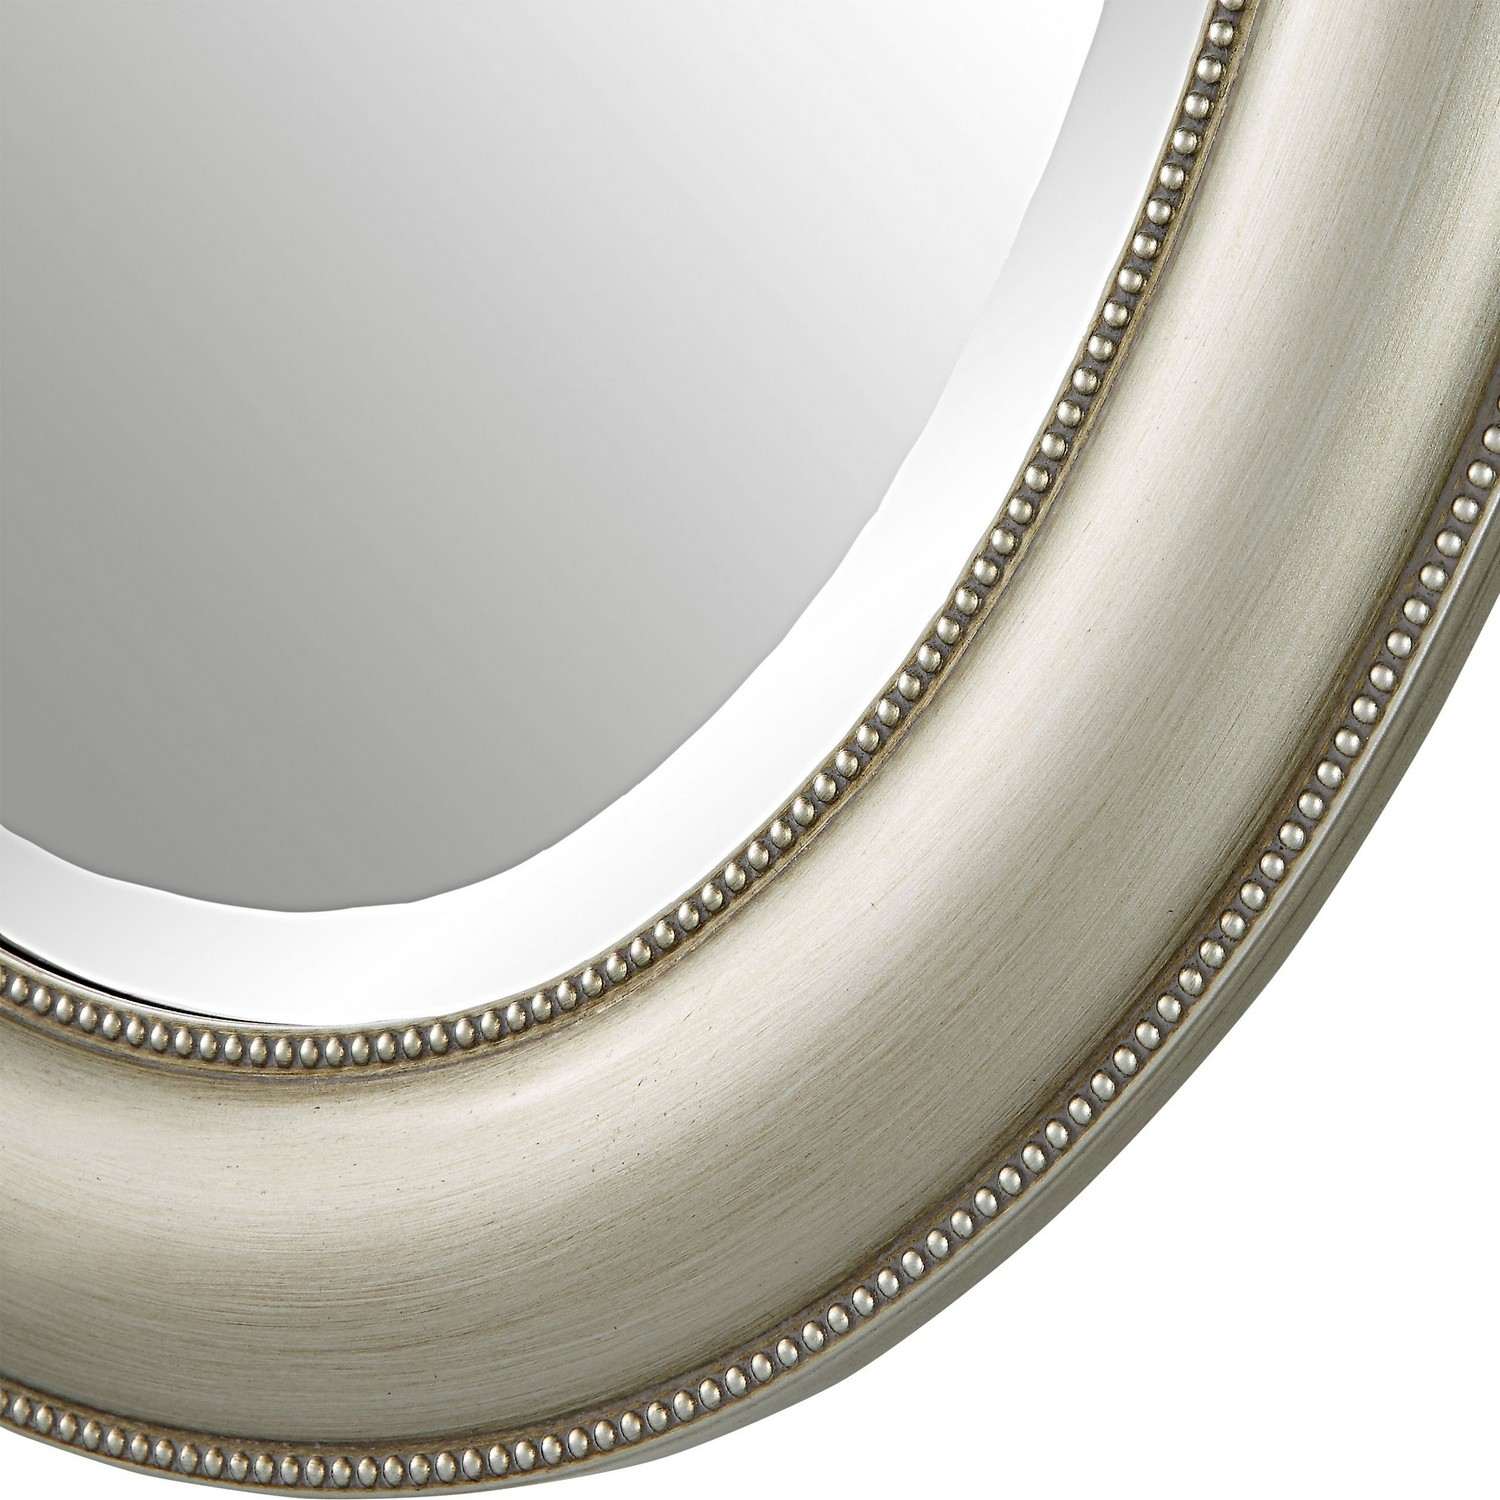 Uttermost W00529 Mirror - Metallic Silver